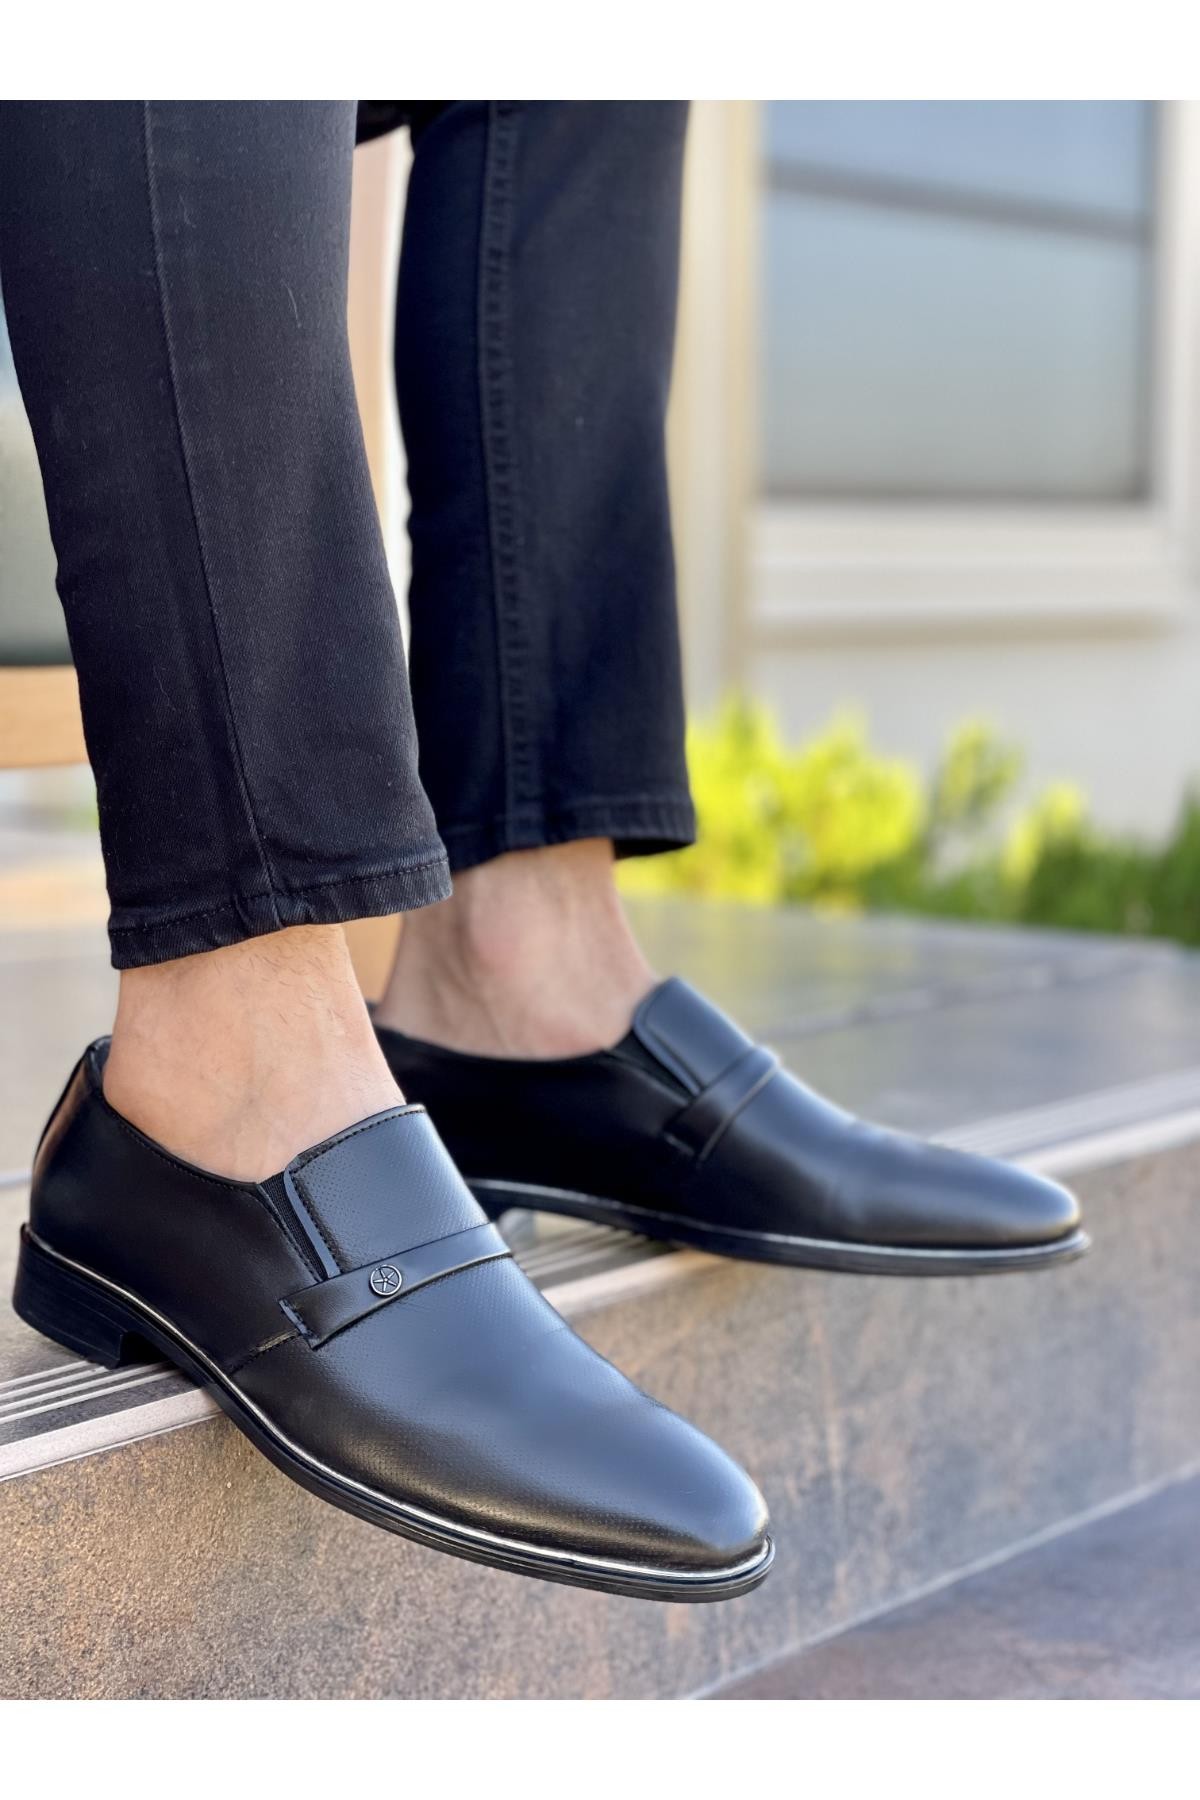 Muggo Denver Garantili Erkek Günlük Klasik Casual Ayakkabı - SİYAH